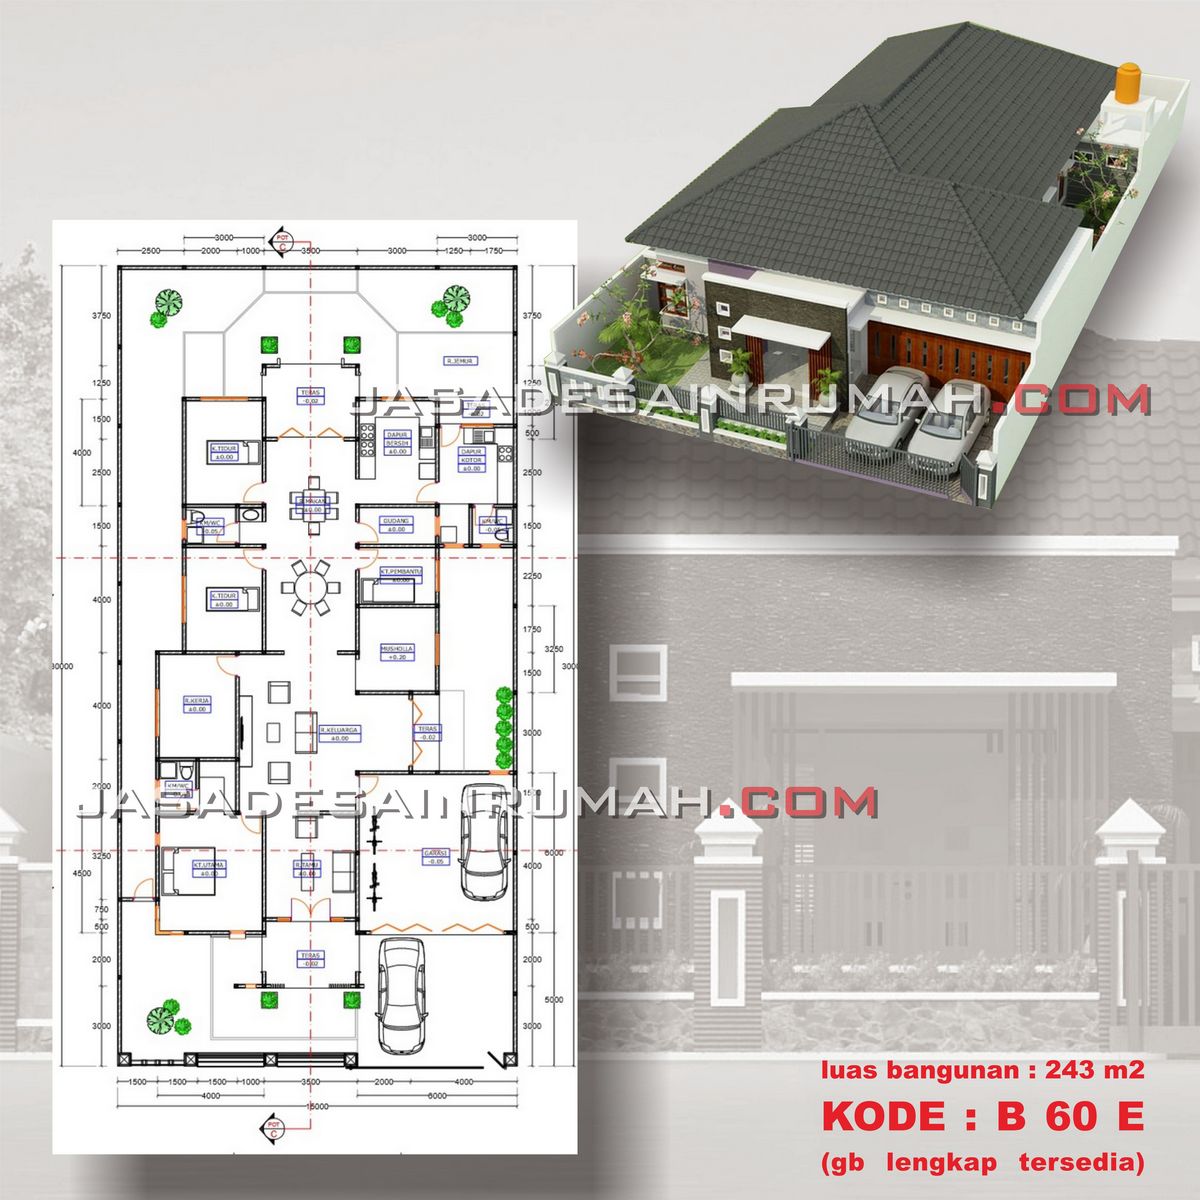 Desain Rumah Besar Lantai Minimalis Elegan Di Tanjung Enim Jasa Desain RumahJasa Desain Rumah